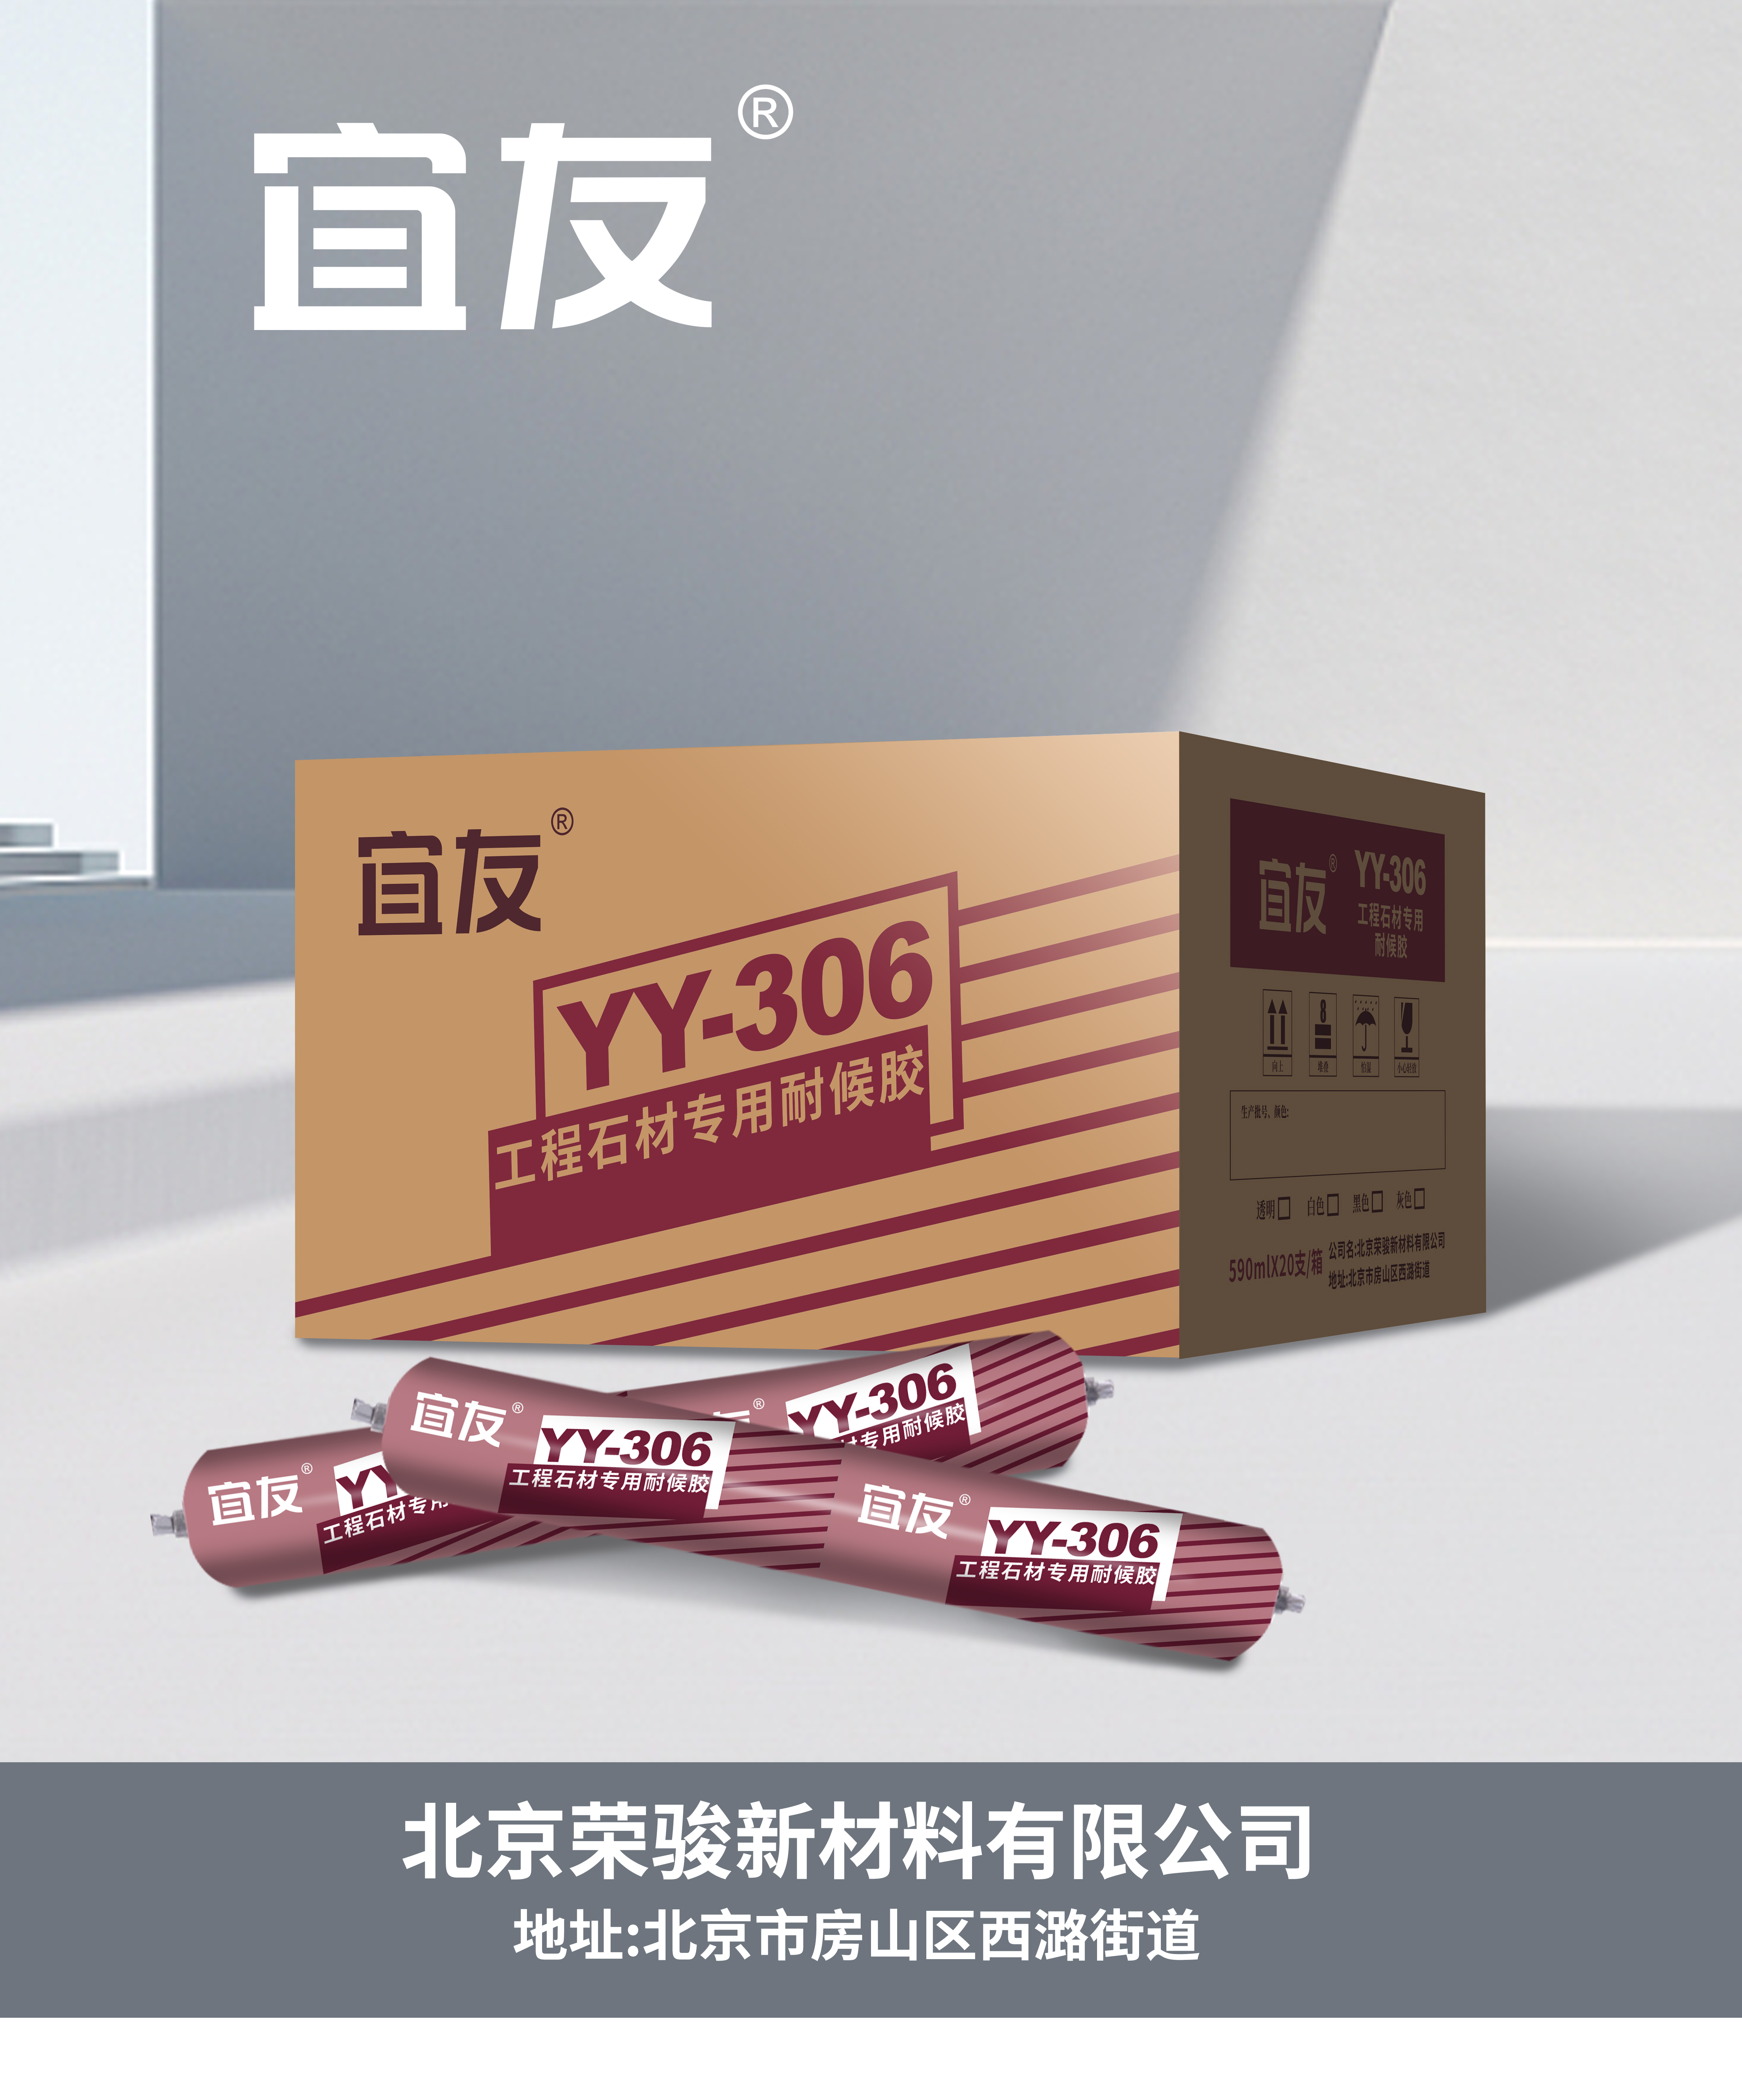 YY-306工程石材專用耐候膠